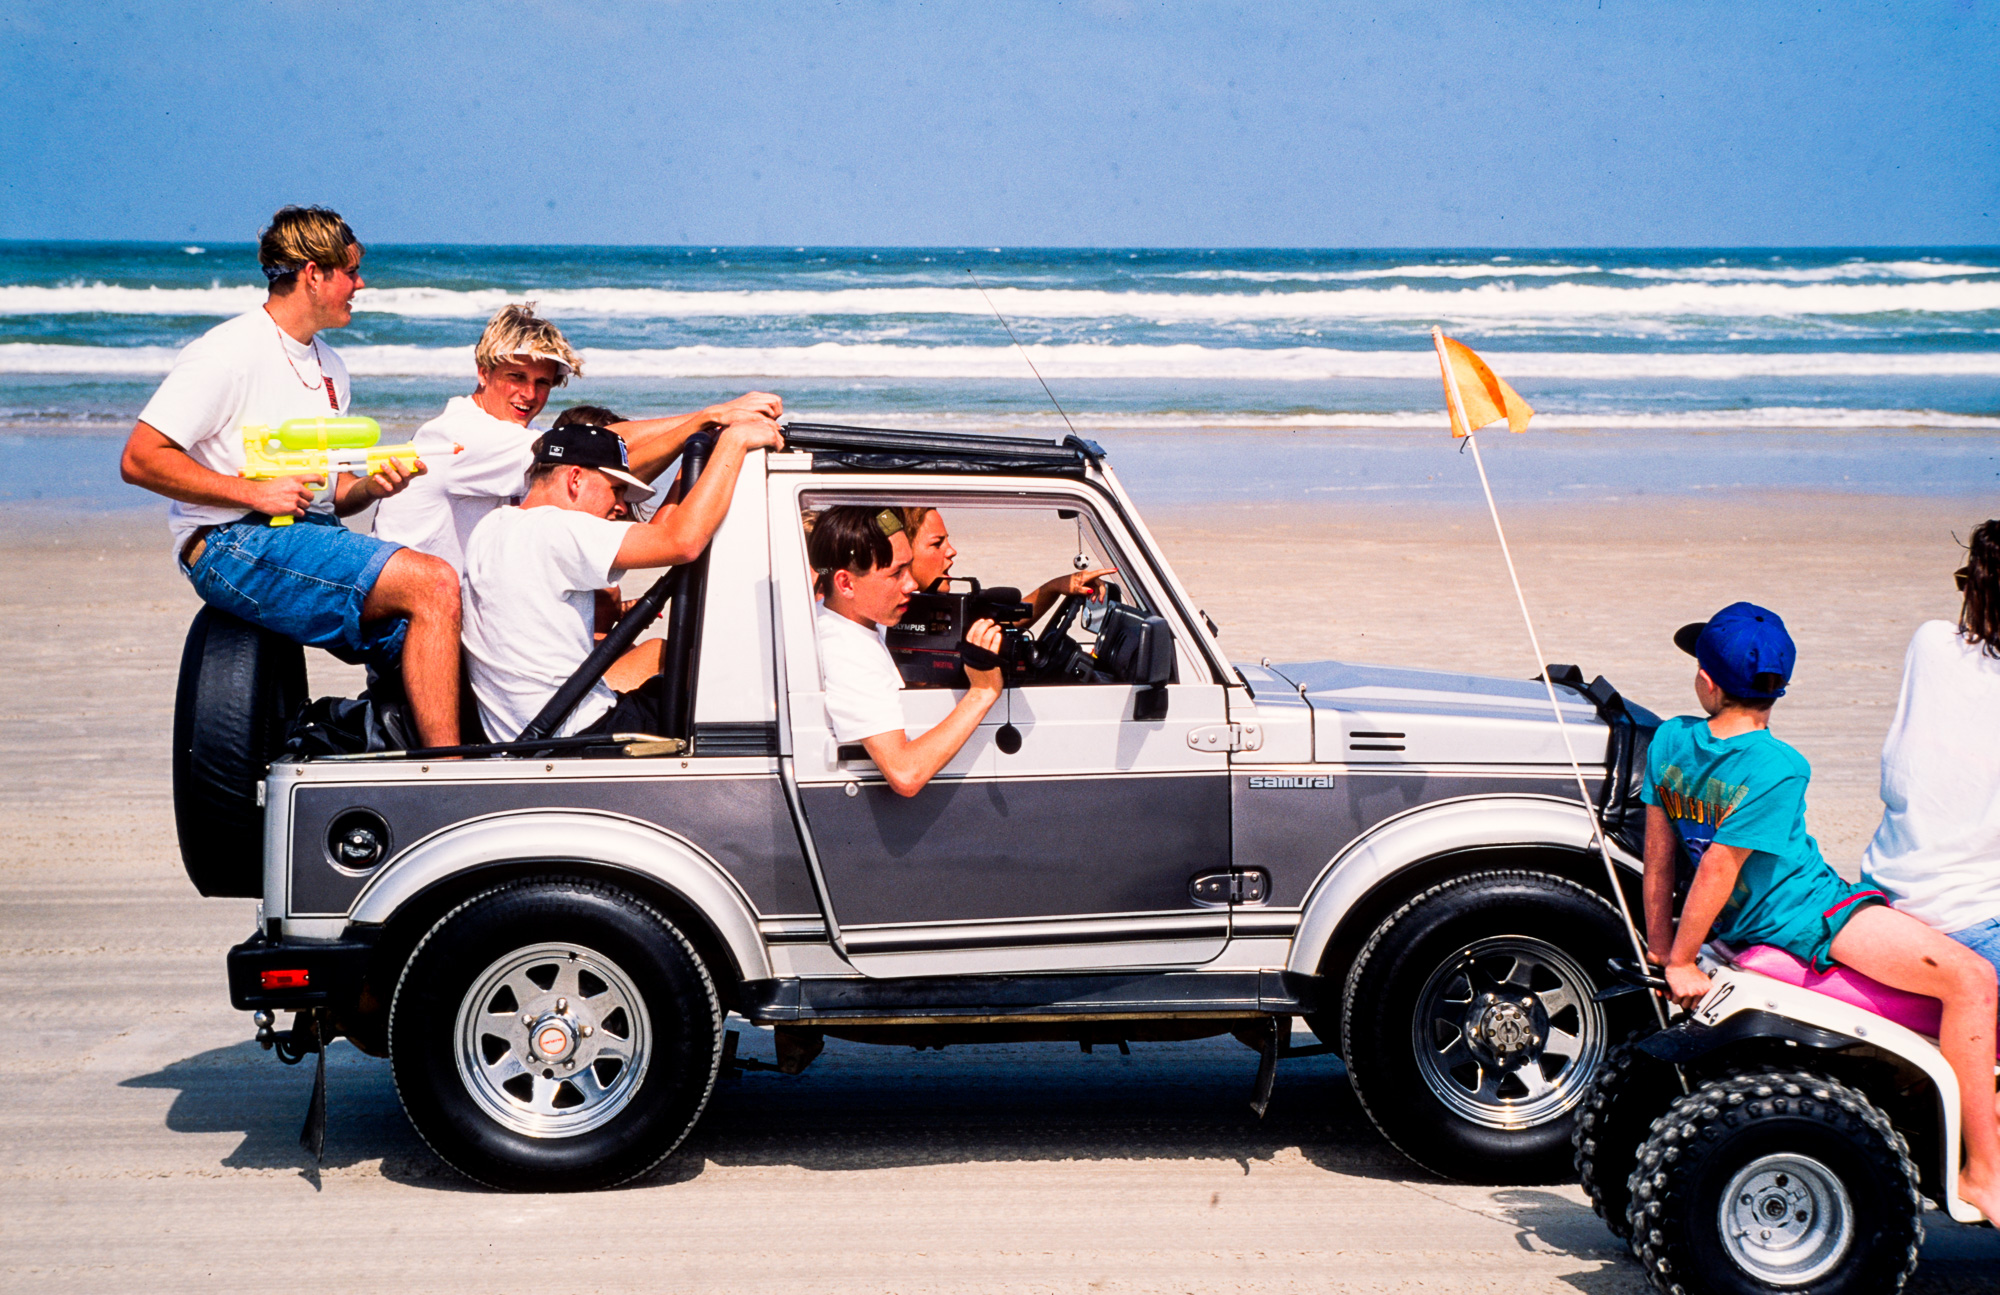 Au moment du "Spring break" les jeunes floridiens s'en donnent à cœur joie. Les véhicules les p^lus anachroniques ont le droit de circuler sur l'immense  plage de Daytona.